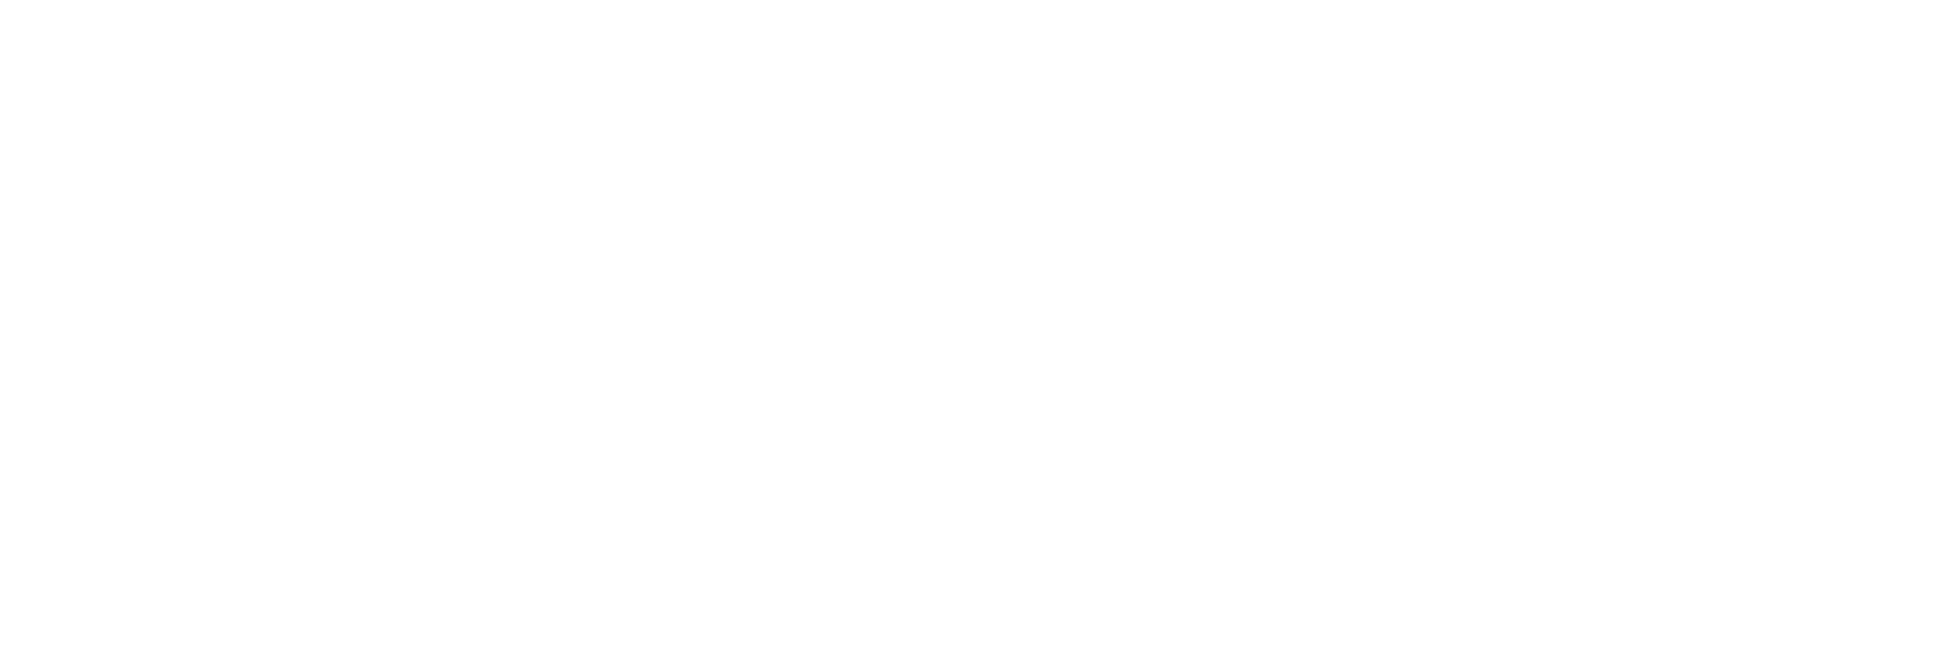 https://uniqueimpressionflowers.com.au/wp-content/uploads/2022/03/cropped-uniques-impression-flowers-final-03.png